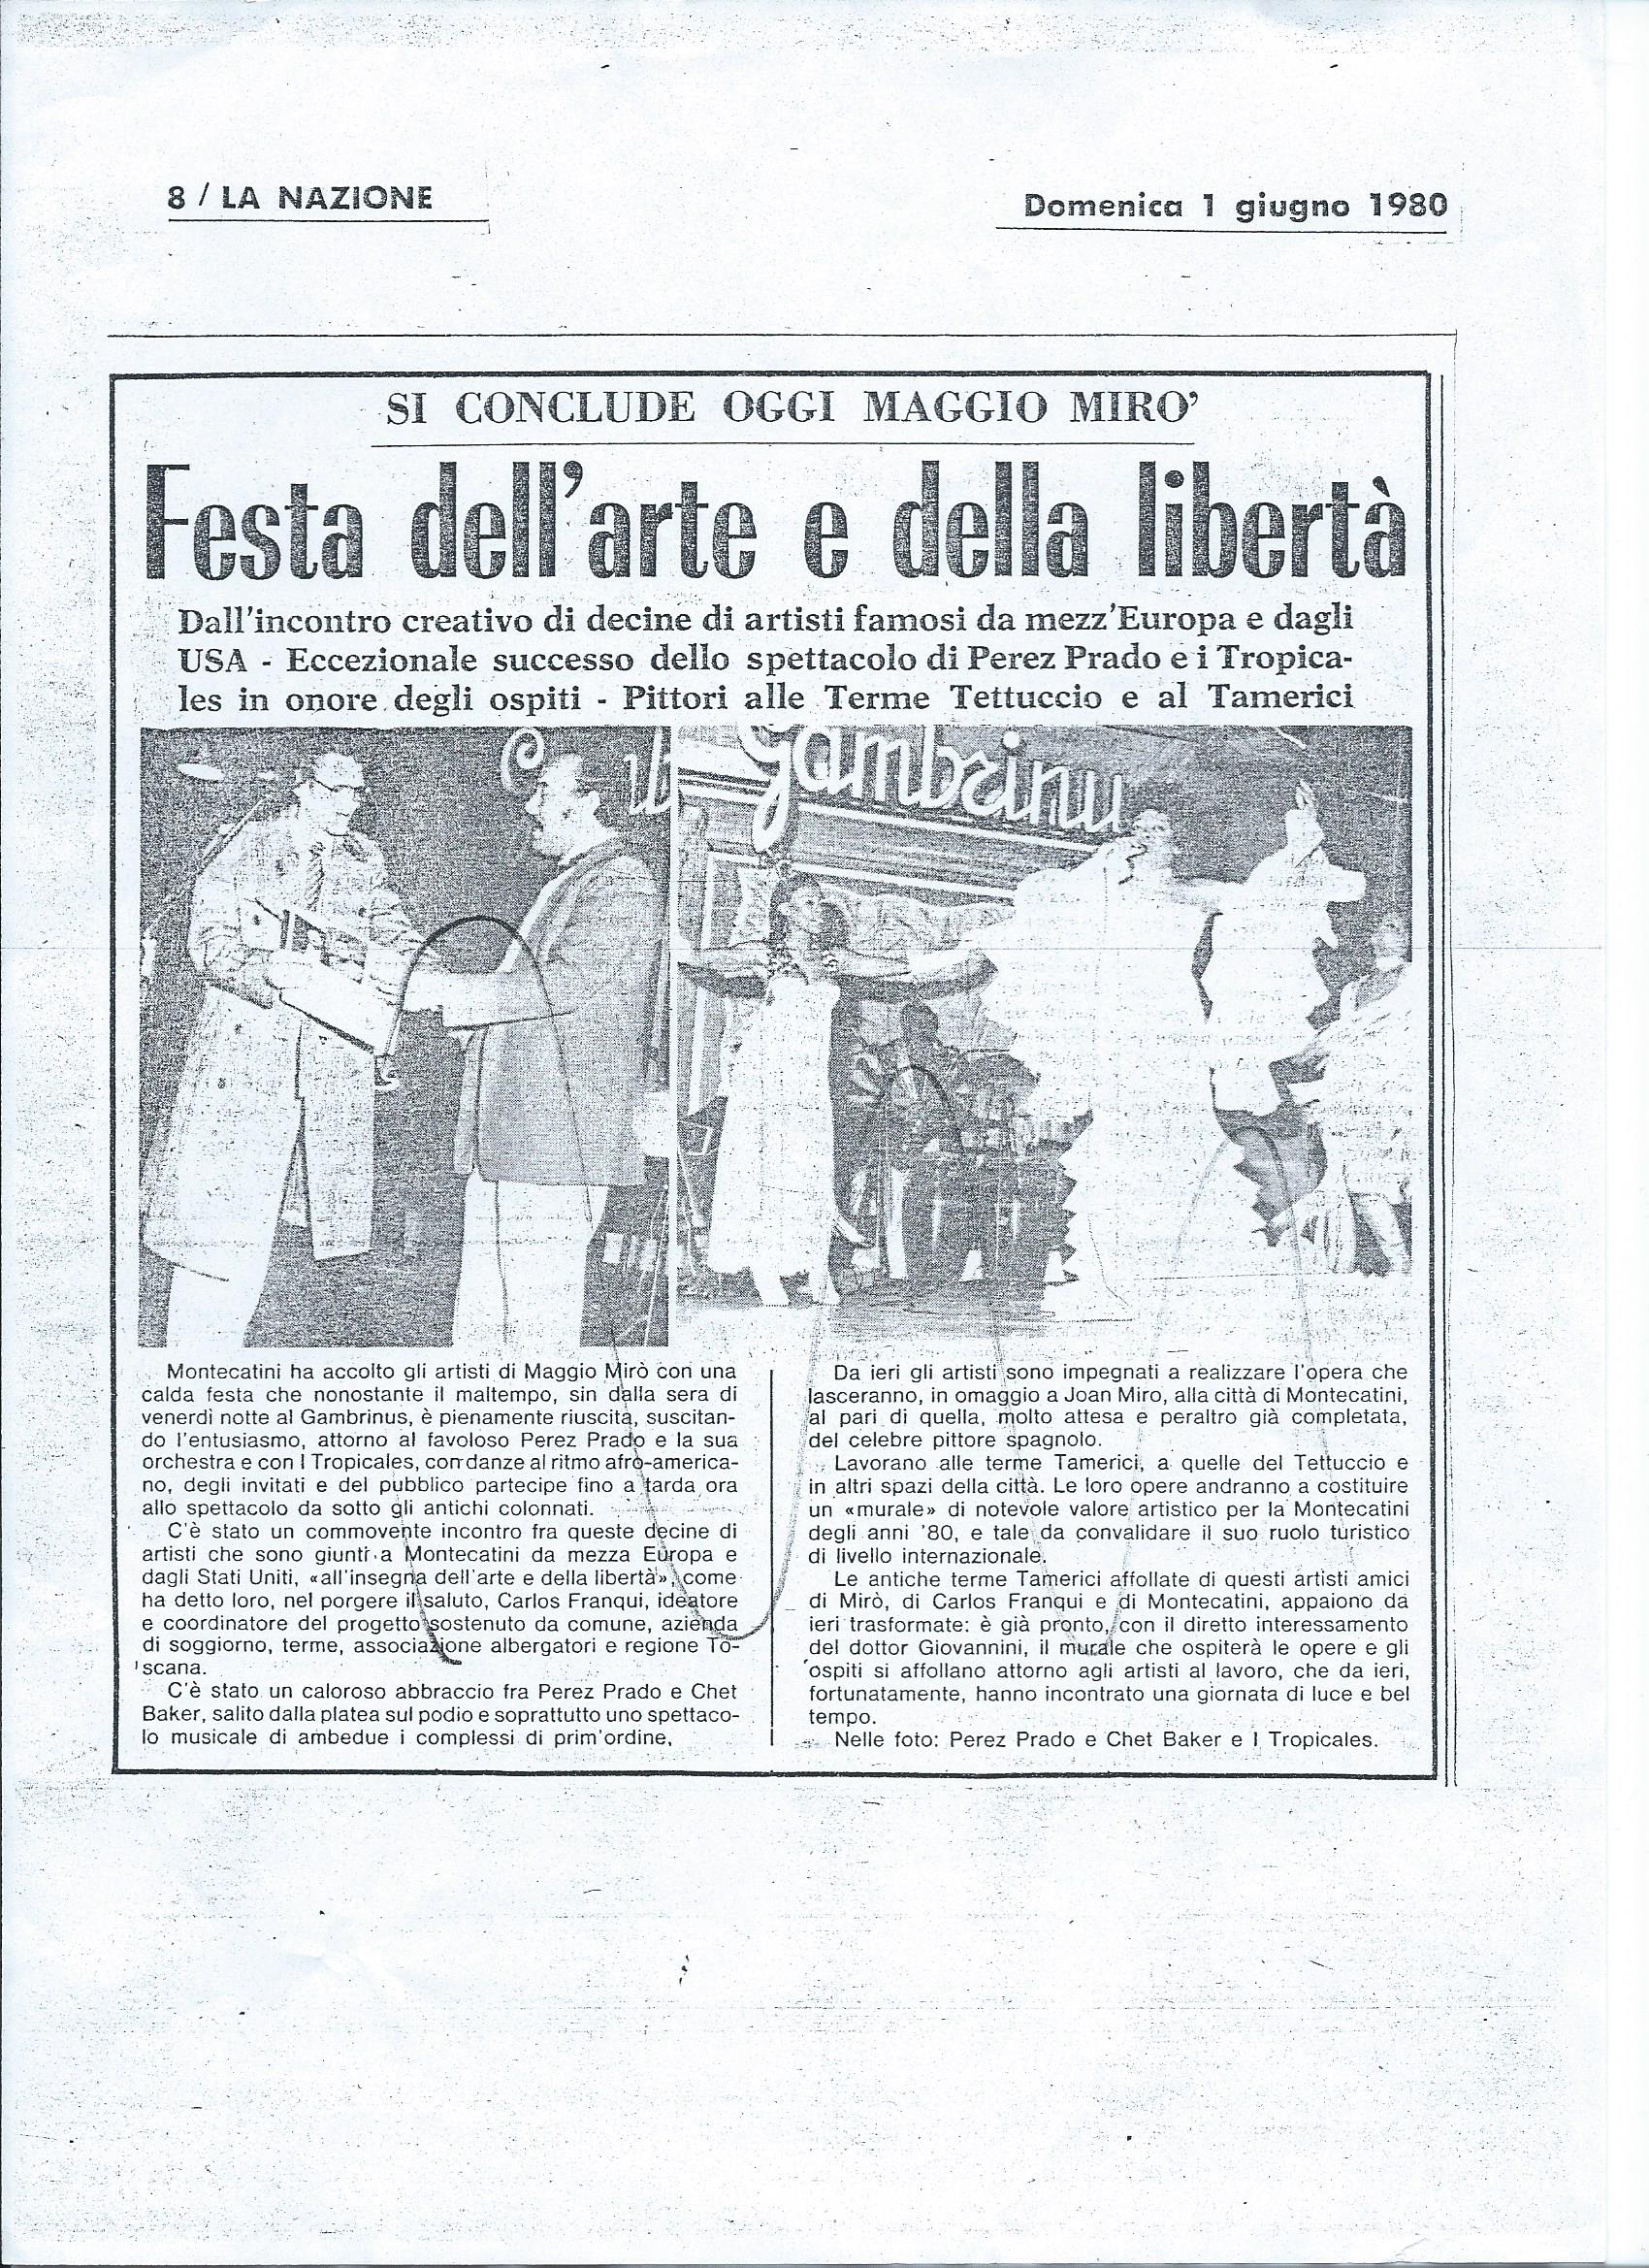 1980, "MaggioMirò", Artículo del periódico La Nazione | Estate Jorge Carruana